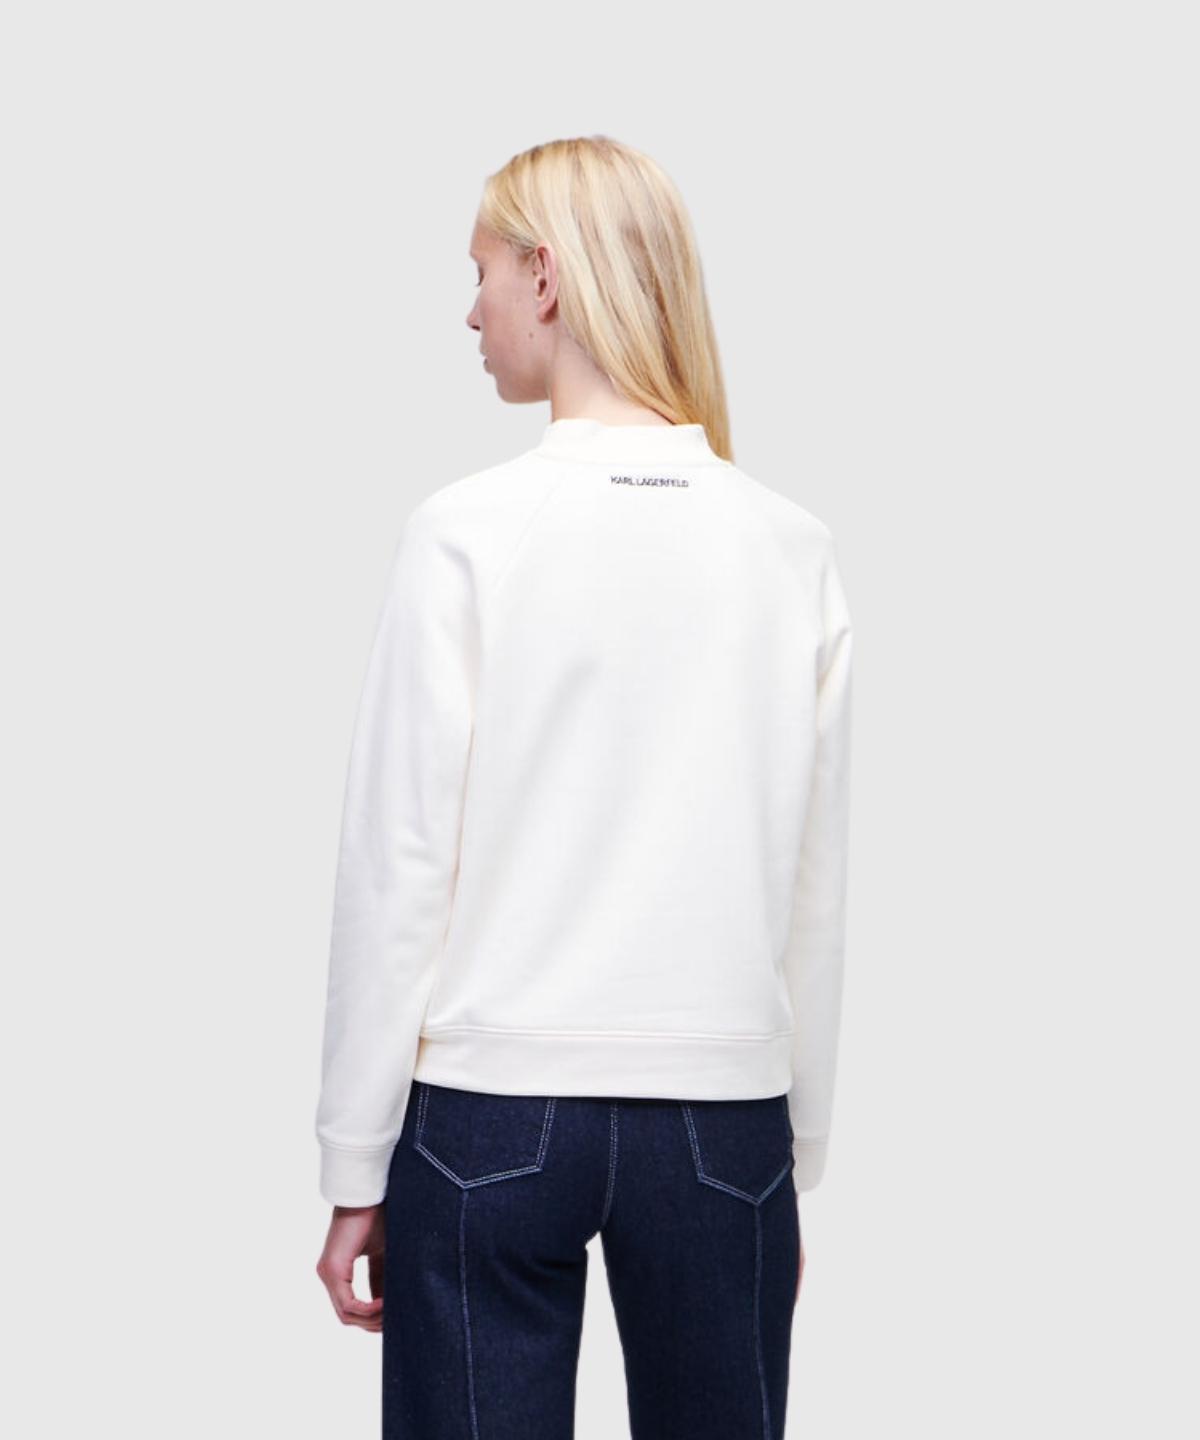 Monogram Rhinestone Sweatshirt